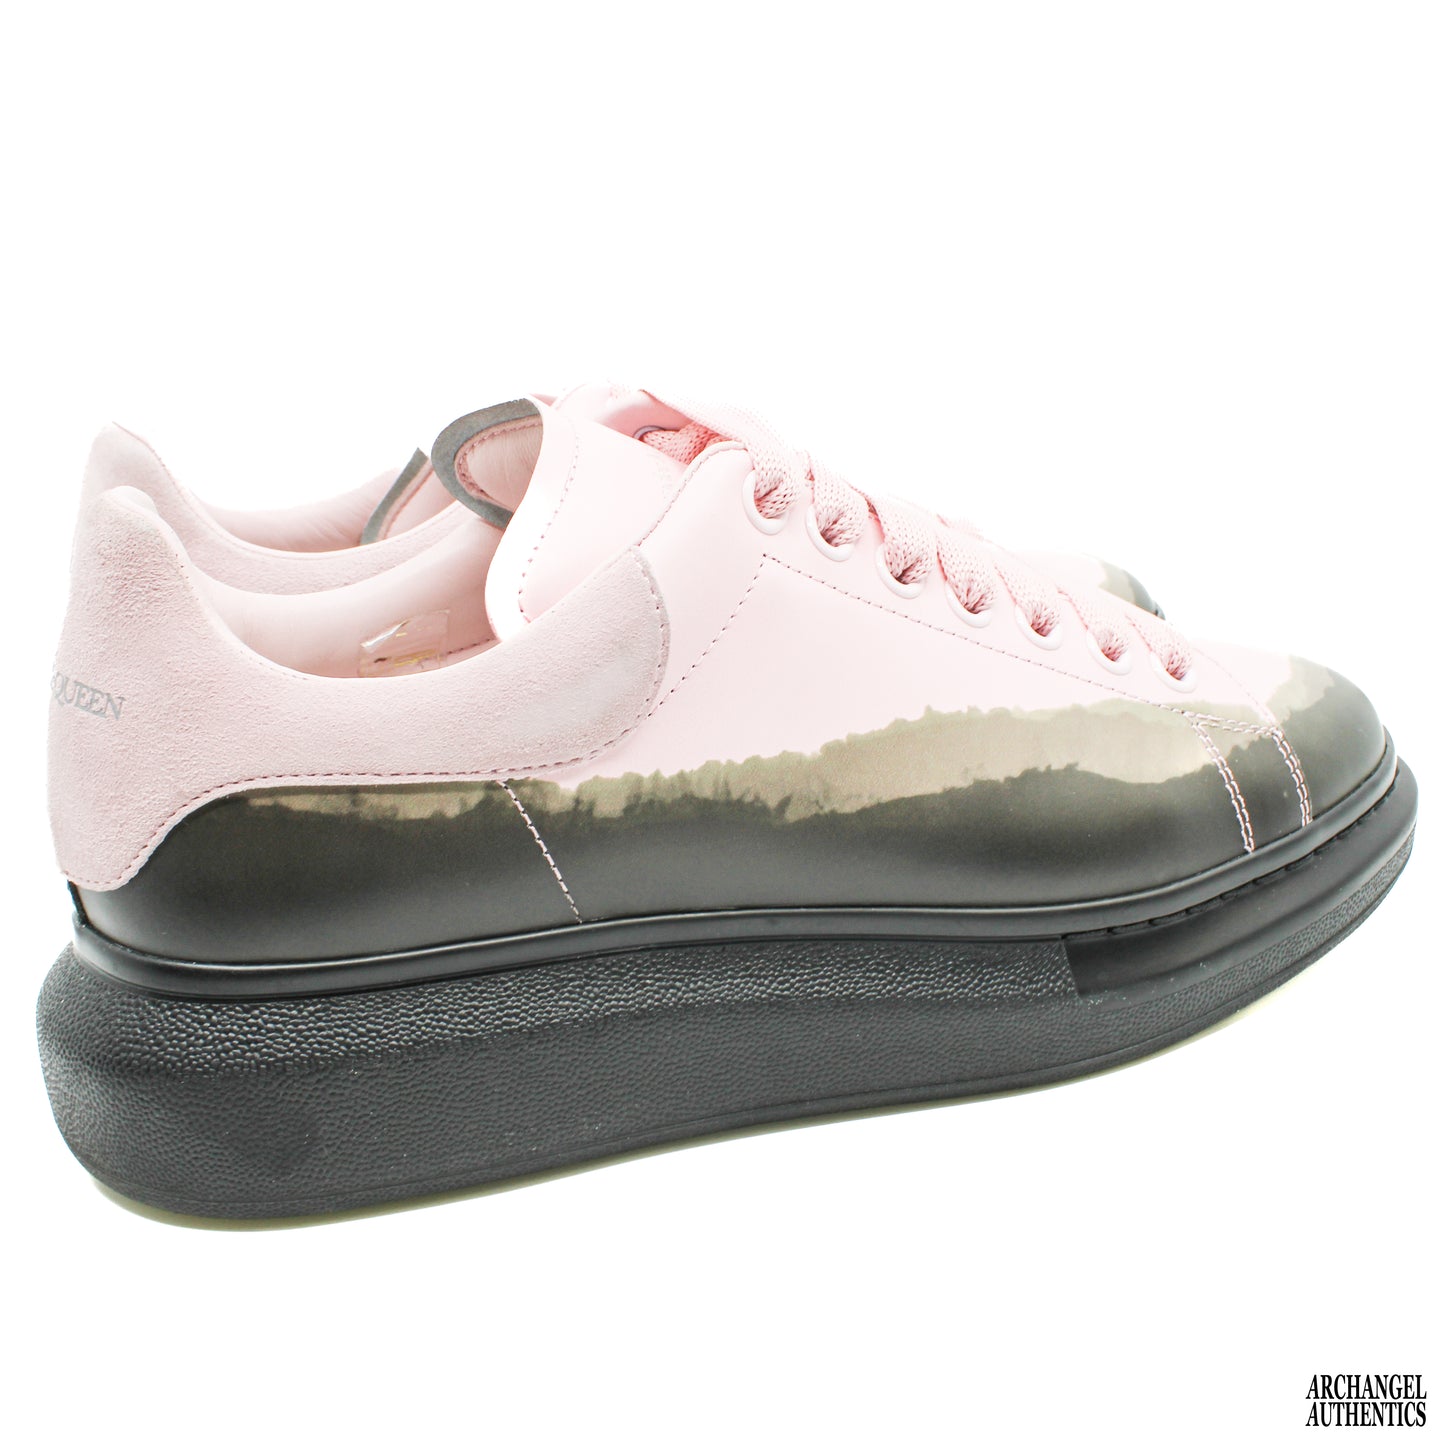 Alexander McQueen Sneaker Larry White/Rose/Black